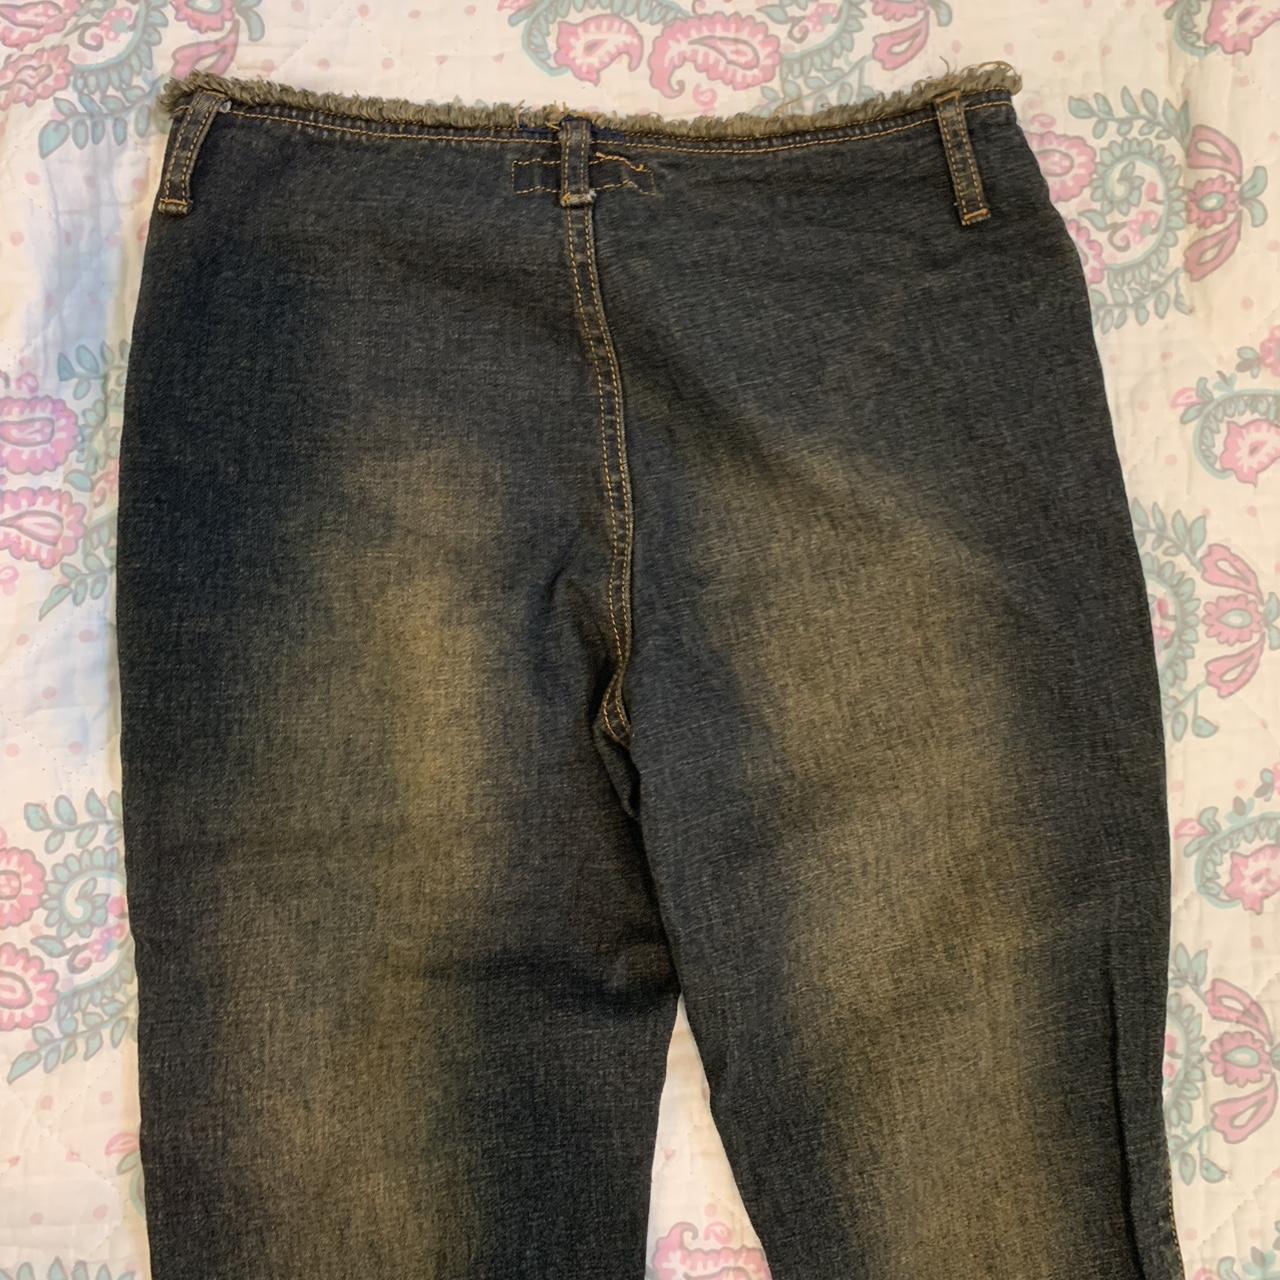 Vintage Revolt Jeans - Size 5/6 (best fits 24”-25”... - Depop